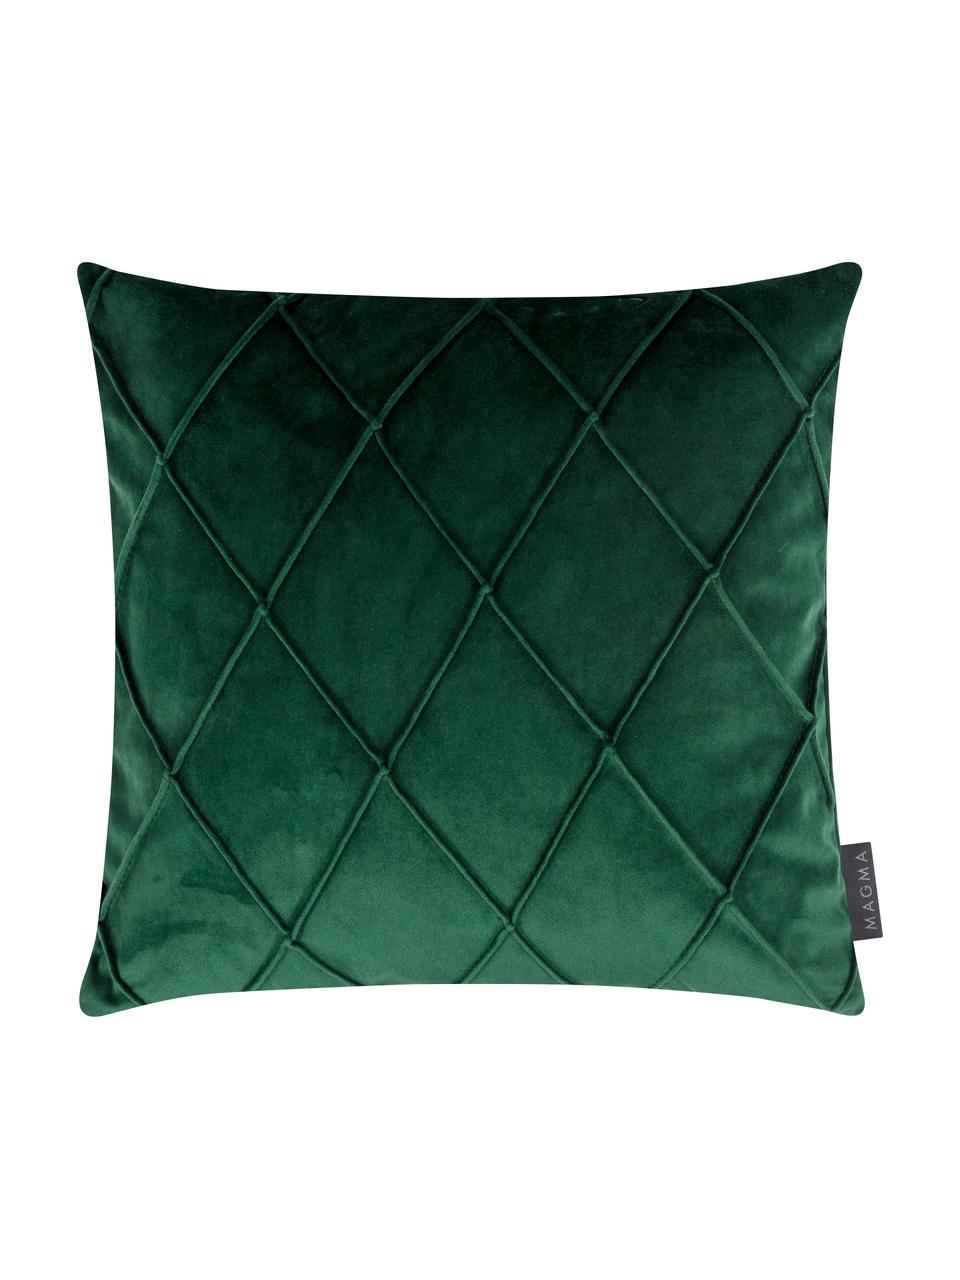 Housse de coussin velours vert Nobless, 100 % velours de polyester, Vert, larg. 40 x long. 40 cm